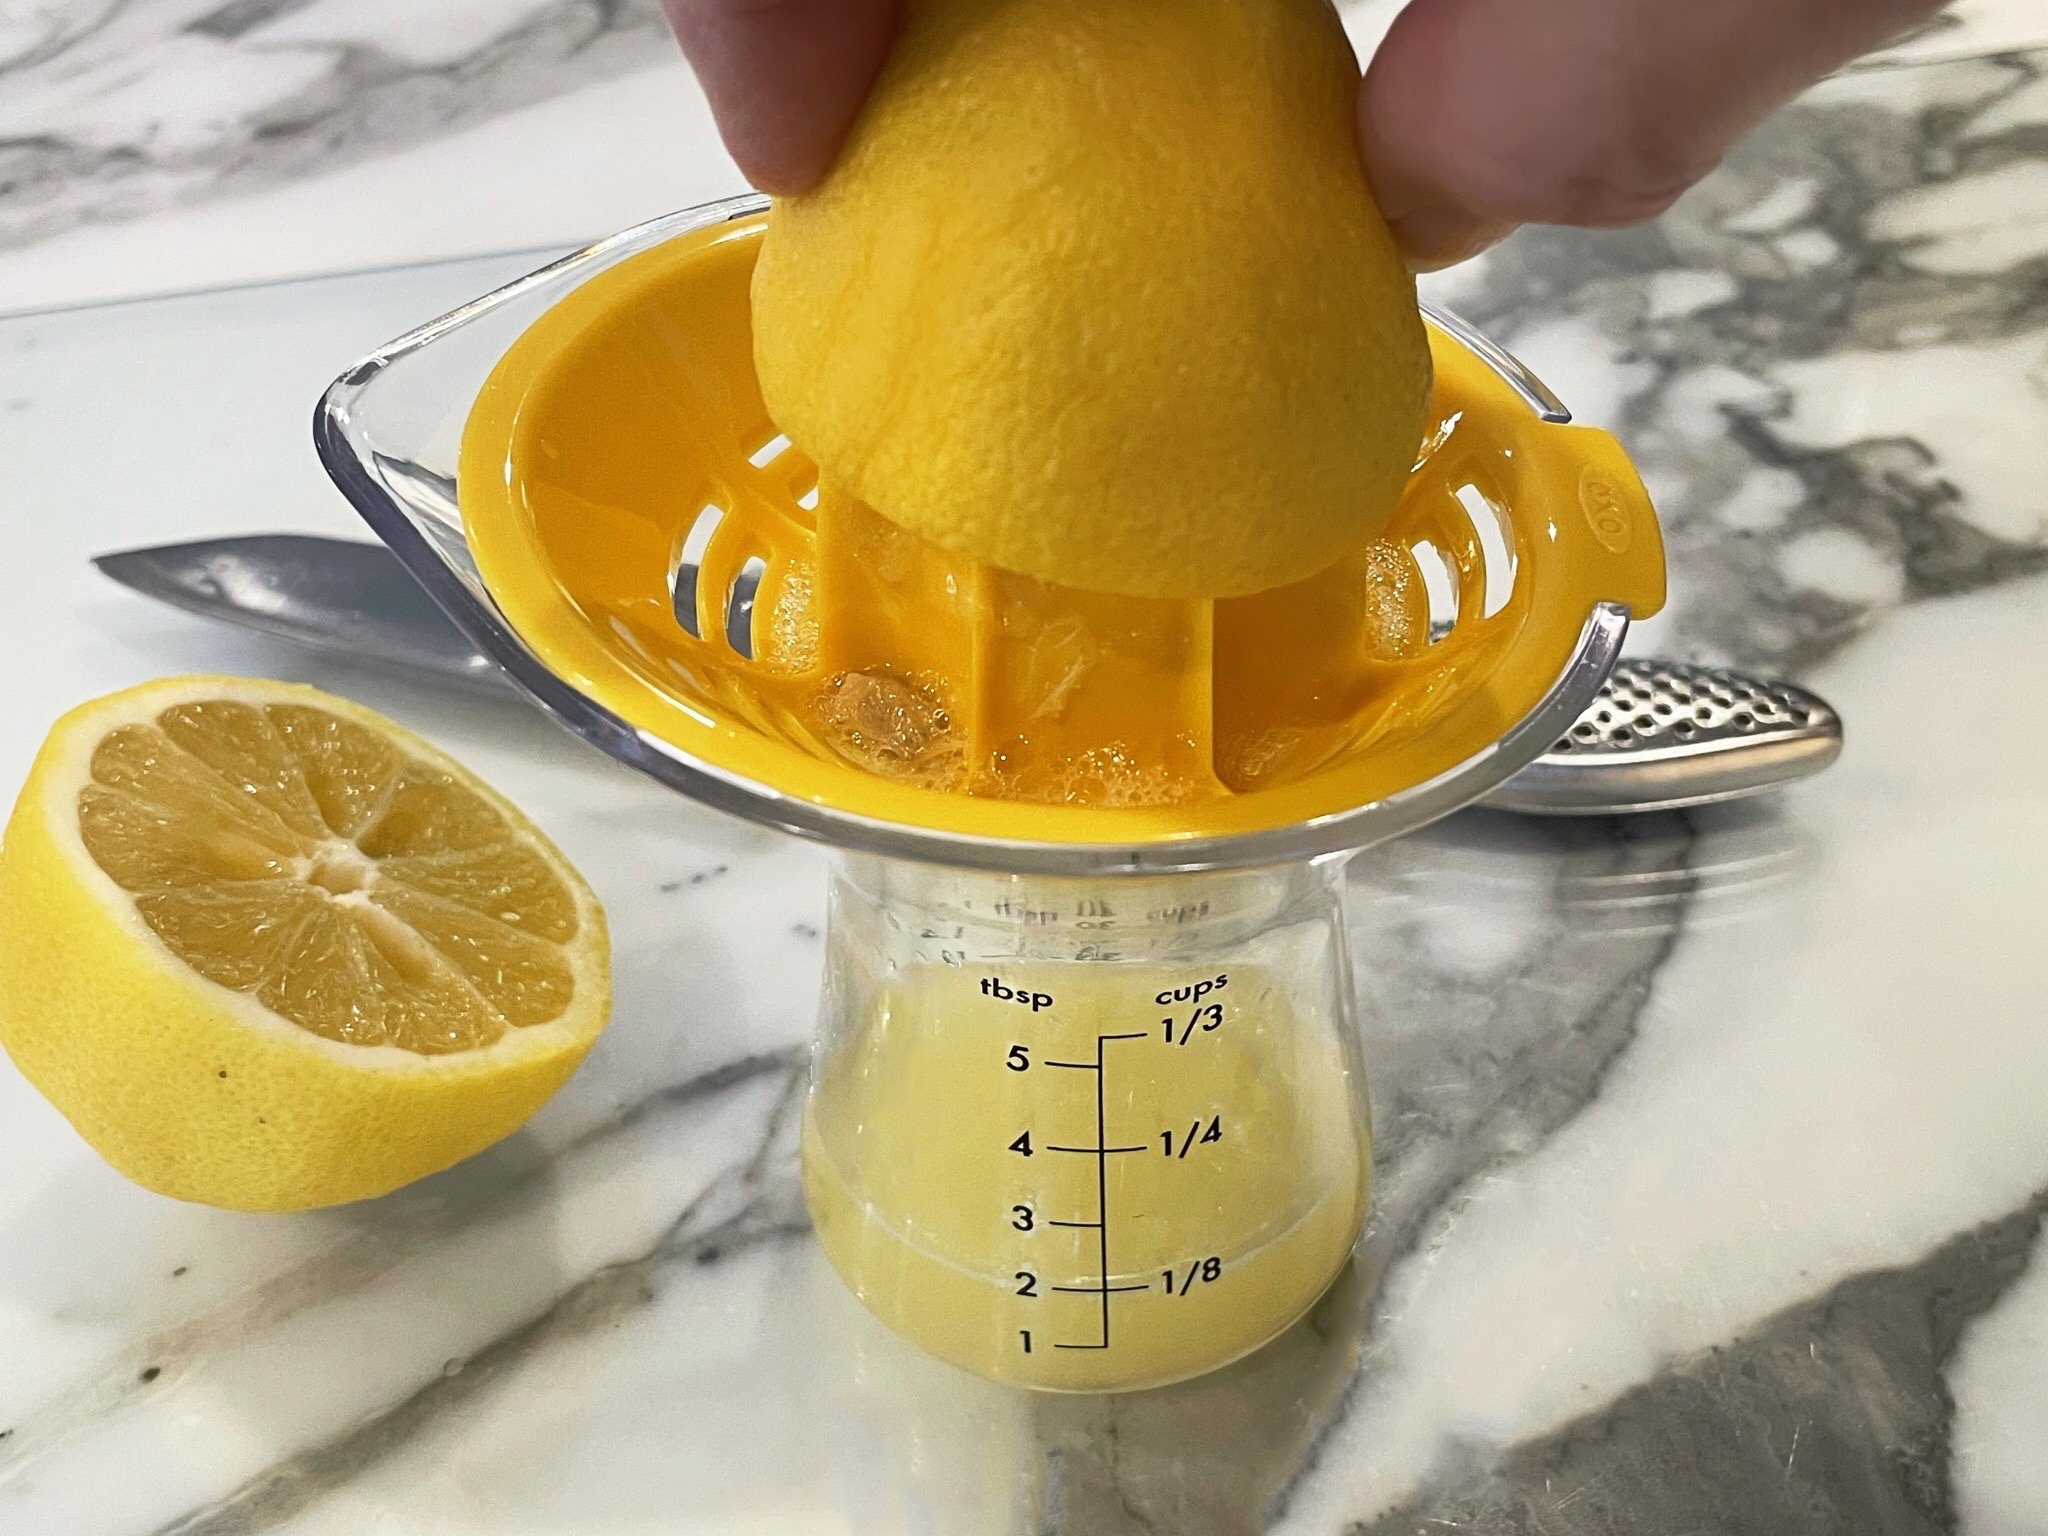 Squeeze lemon.